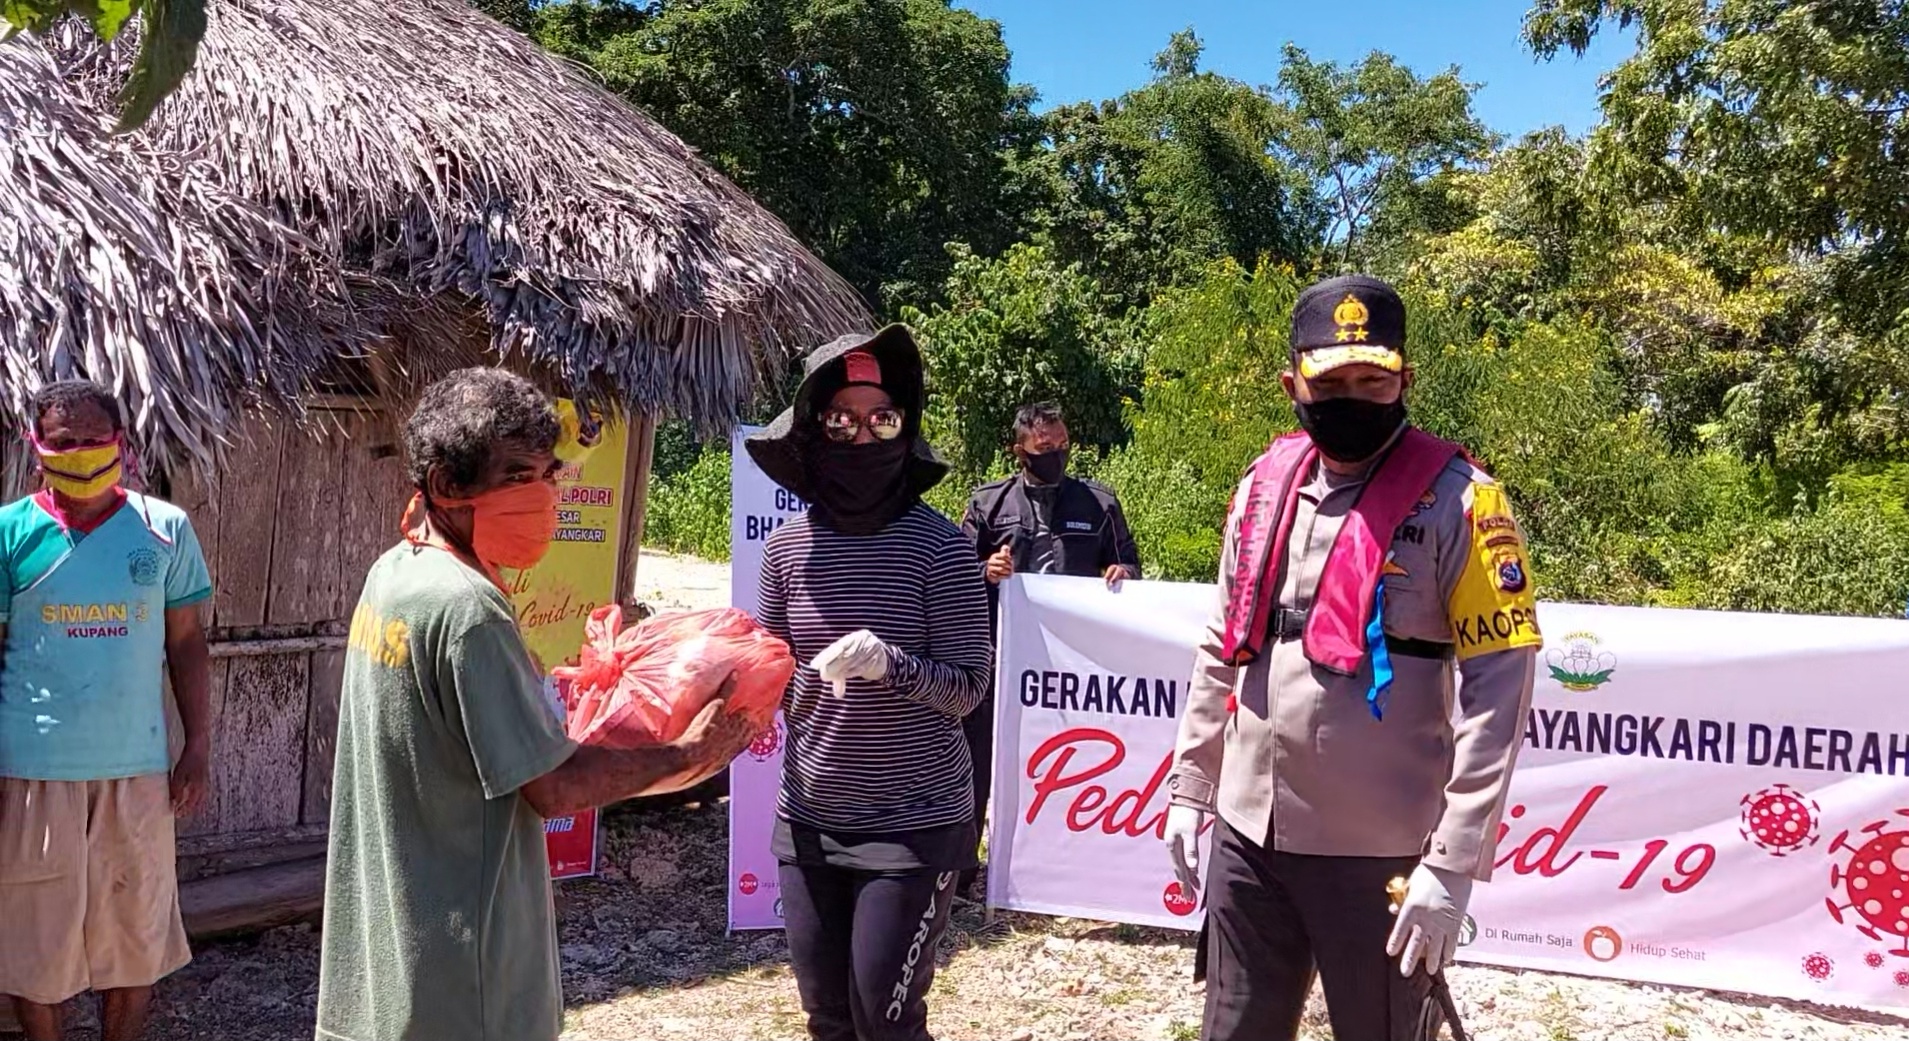 Gerakan Bhakti Sosial Polri Peduli Covid-19, Kapolda NTT dan Ketua Bhayangkari Daerah NTT Bagi Paket Sembako Kepada Masyarakat Pulau Semau